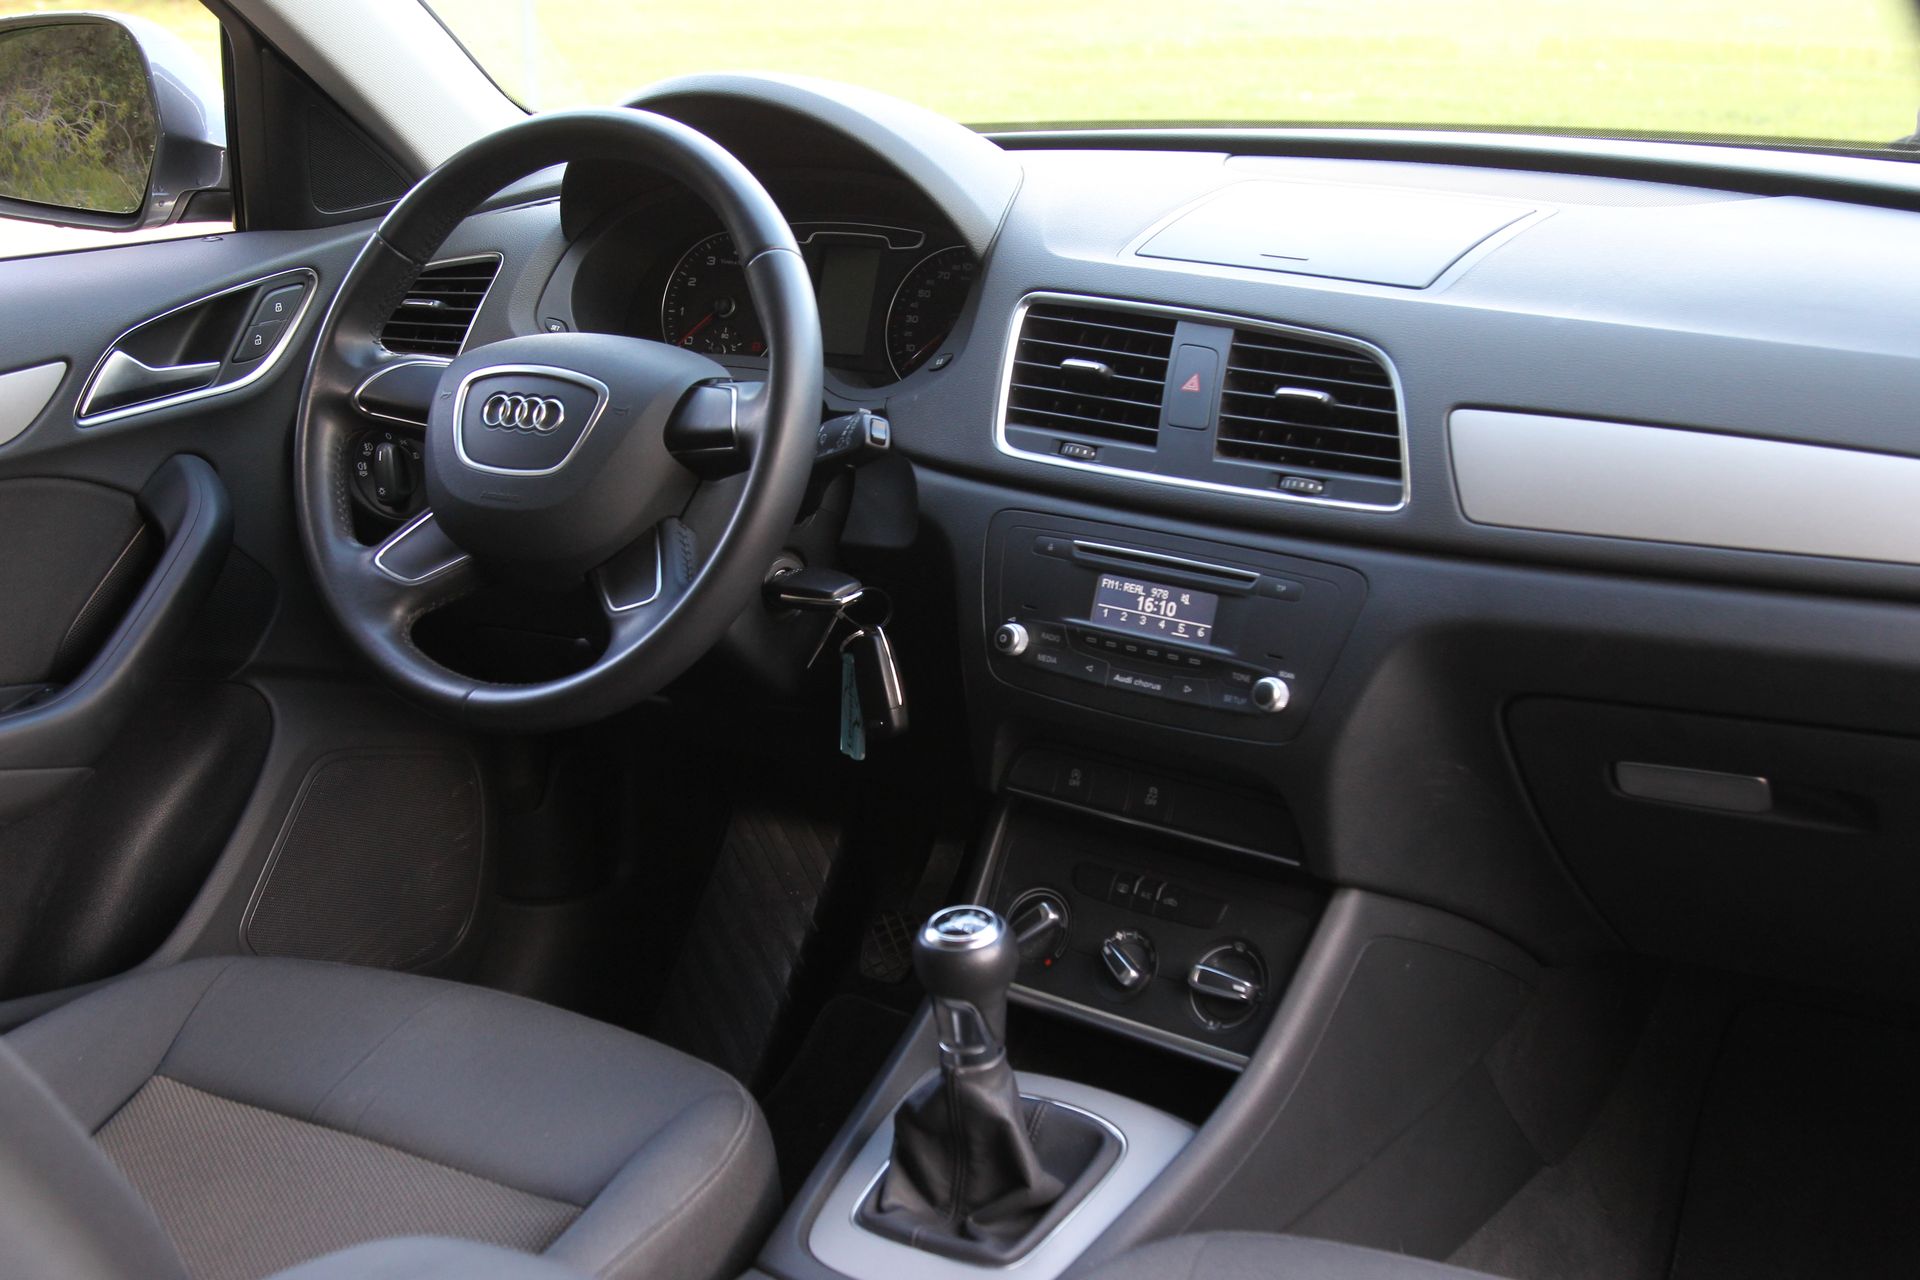 Audi Q3 Used2Drive 2